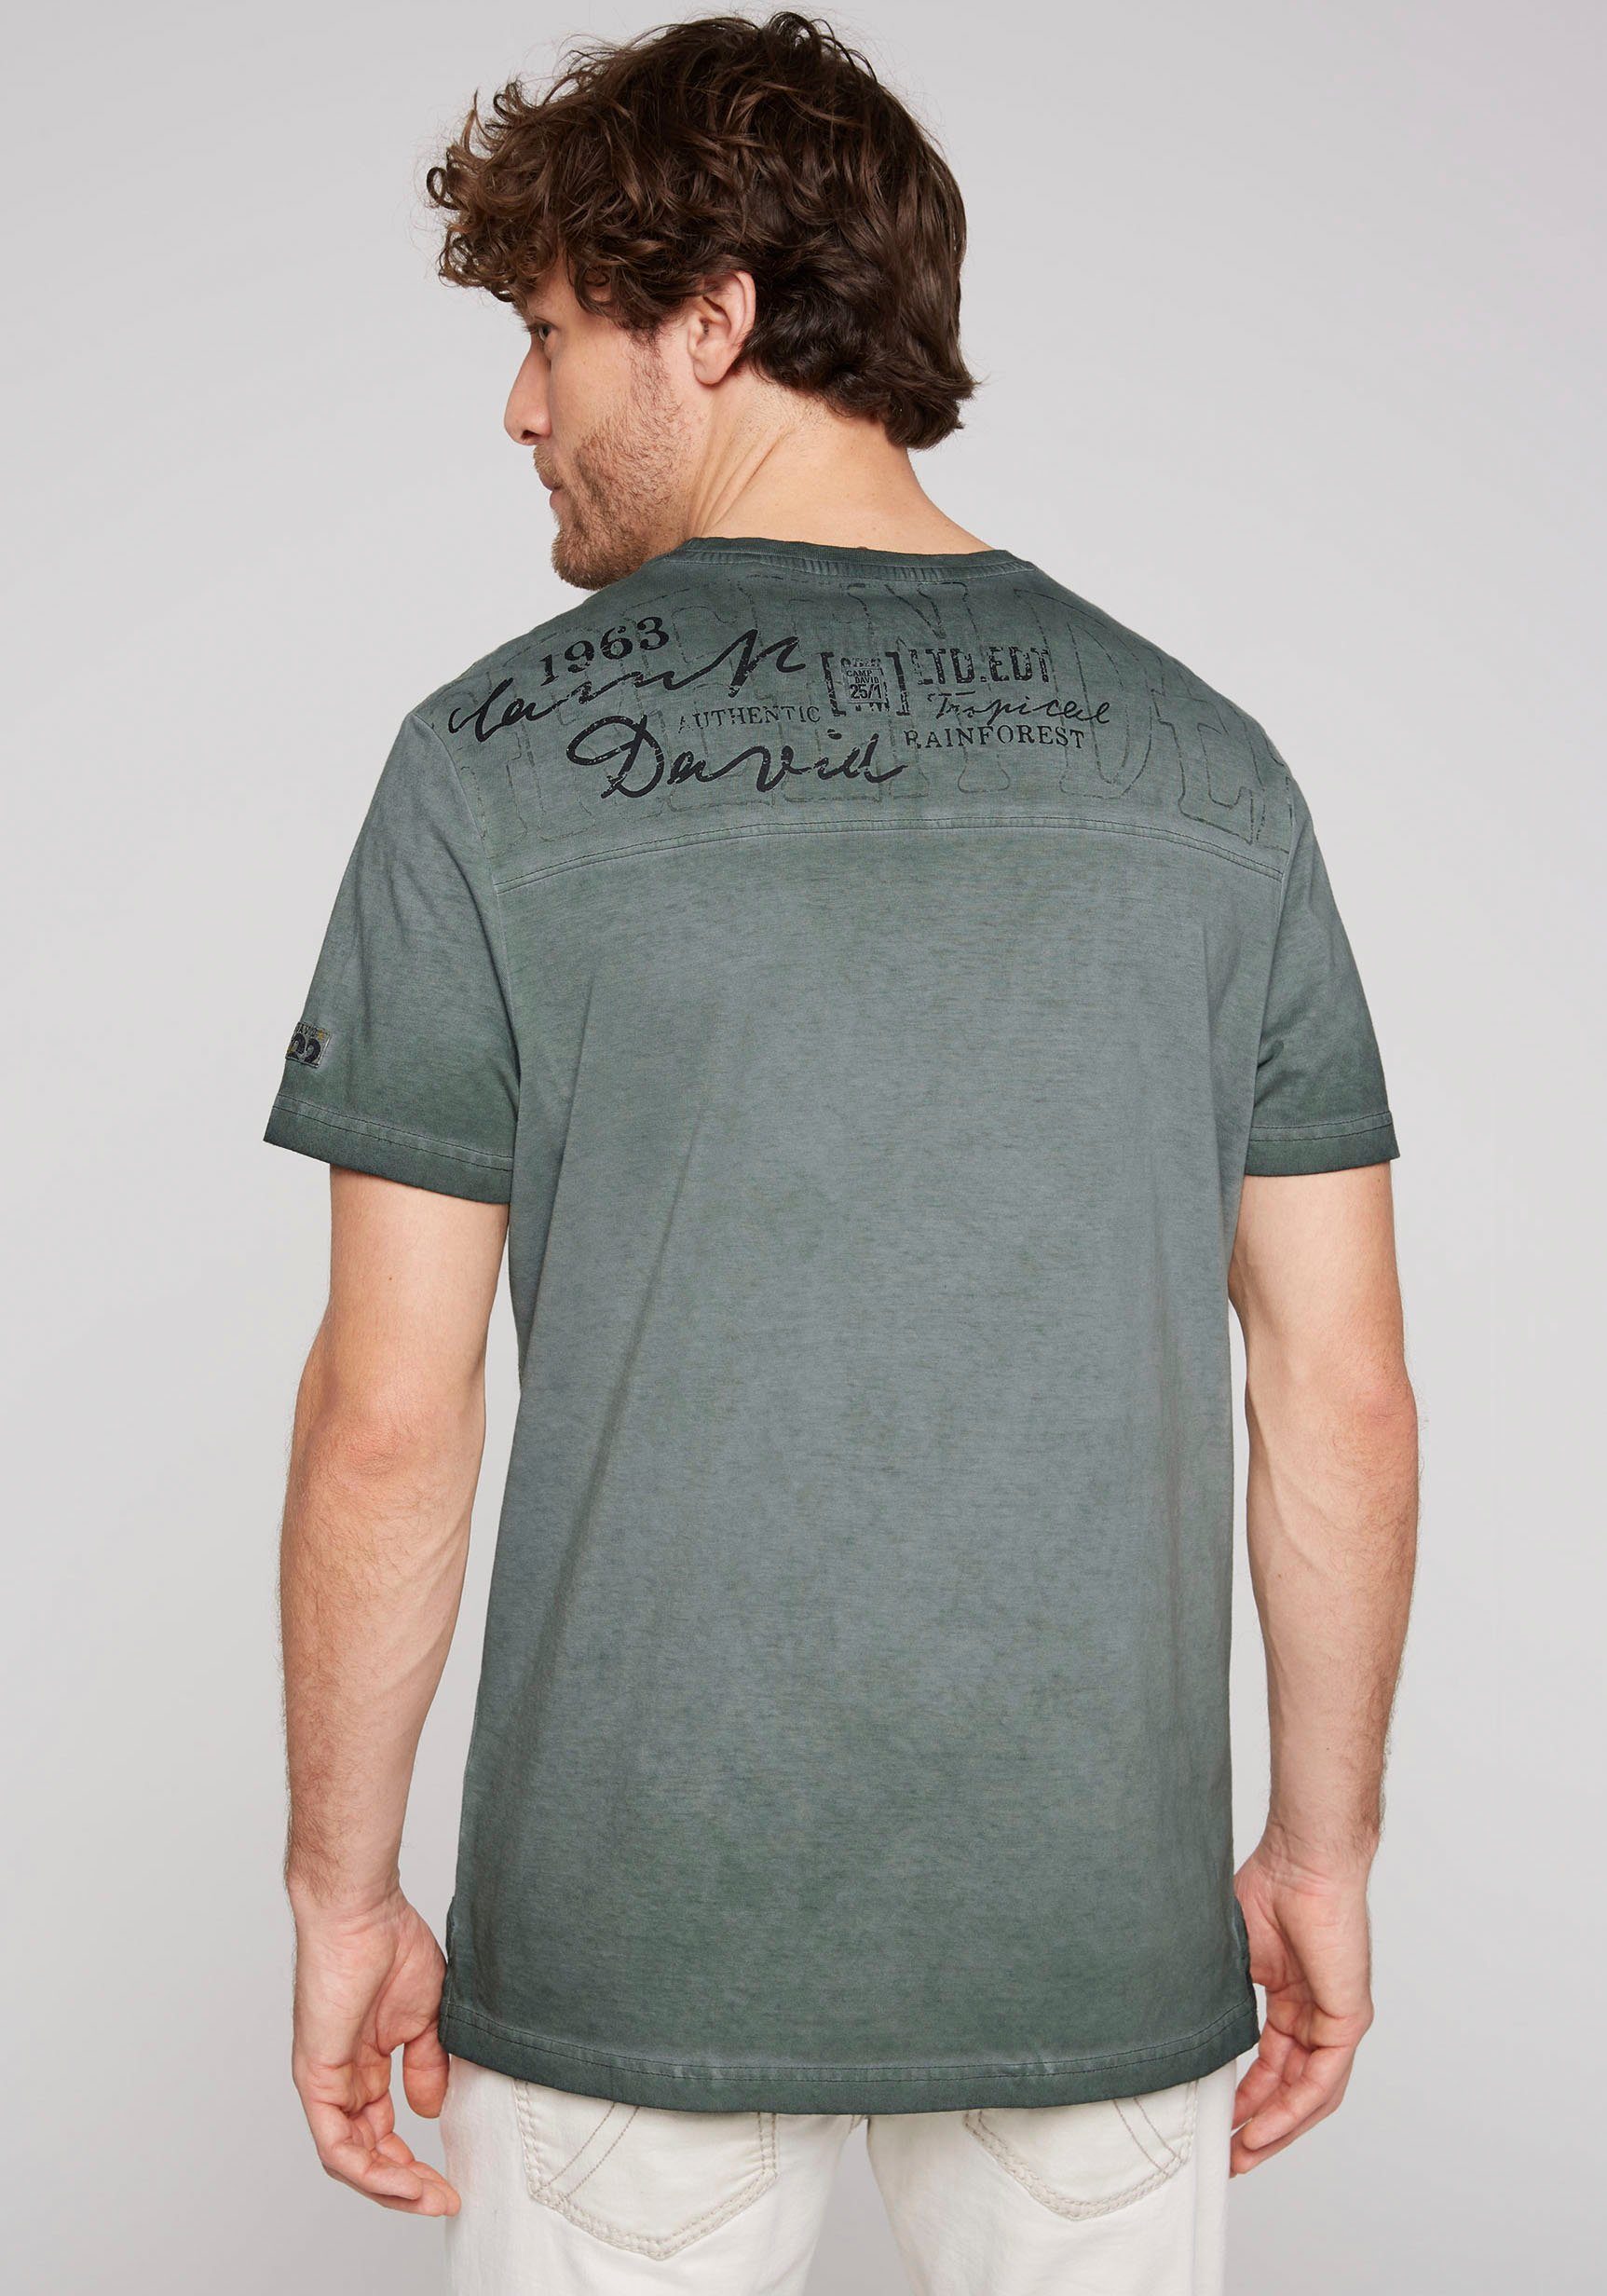 T-Shirt Seitenschlitzen DAVID shadow mit CAMP green